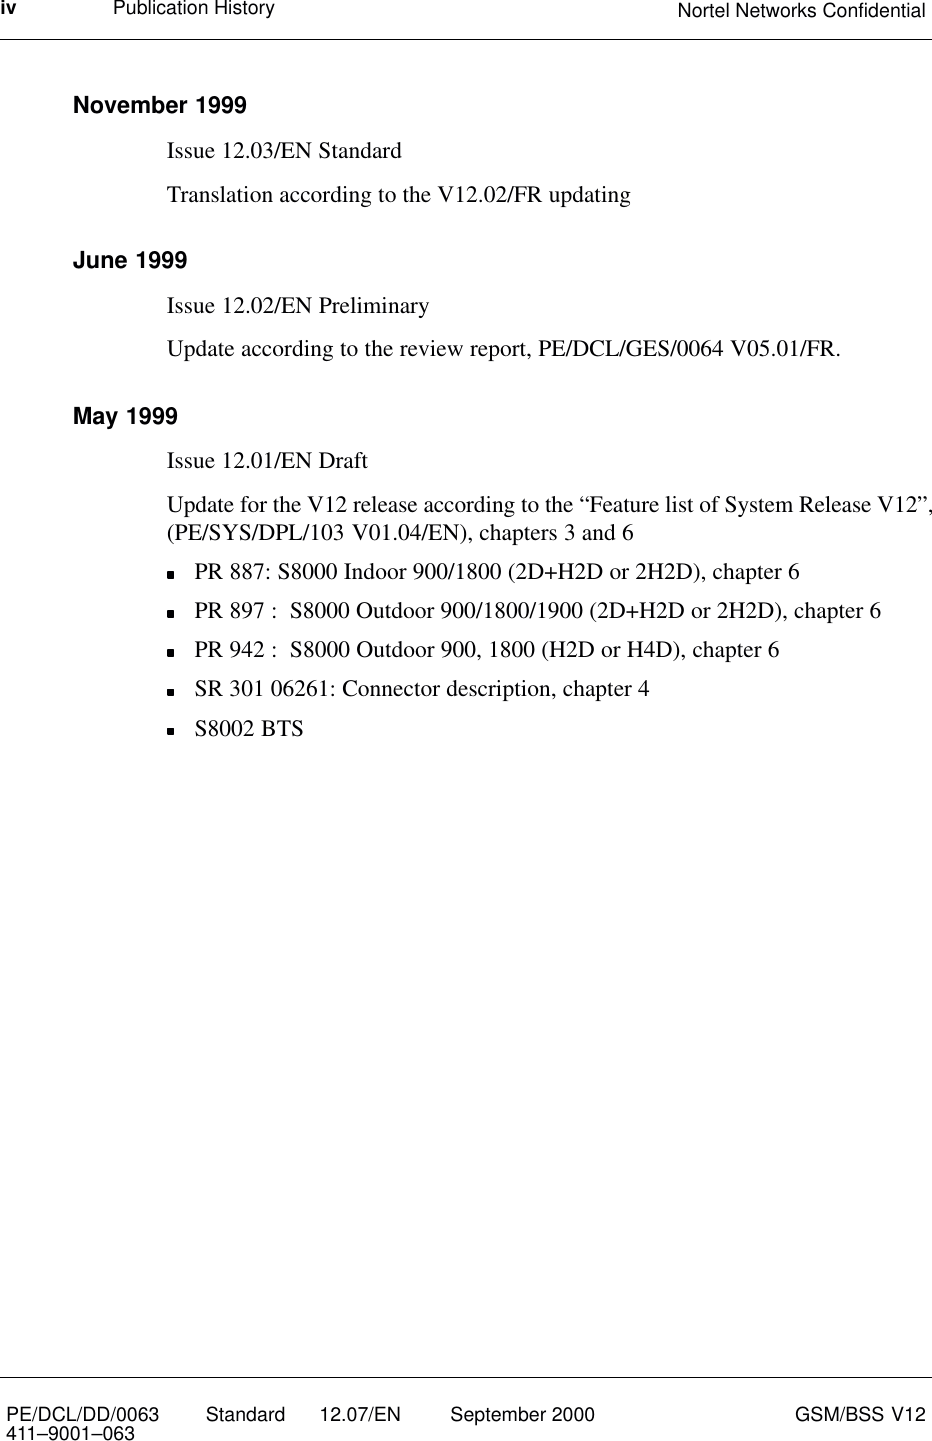 Publication History Nortel Networks ConfidentialivPE/DCL/DD/0063411–9001–063 Standard      12.07/EN September 2000 GSM/BSS V12November 1999Issue 12.03/EN StandardTranslation according to the V12.02/FR updatingJune 1999Issue 12.02/EN PreliminaryUpdate according to the review report, PE/DCL/GES/0064 V05.01/FR.May 1999Issue 12.01/EN DraftUpdate for the V12 release according to the “Feature list of System Release V12”,(PE/SYS/DPL/103 V01.04/EN), chapters 3 and 6PR 887: S8000 Indoor 900/1800 (2D+H2D or 2H2D), chapter 6PR 897 :  S8000 Outdoor 900/1800/1900 (2D+H2D or 2H2D), chapter 6PR 942 :  S8000 Outdoor 900, 1800 (H2D or H4D), chapter 6SR 301 06261: Connector description, chapter 4S8002 BTS